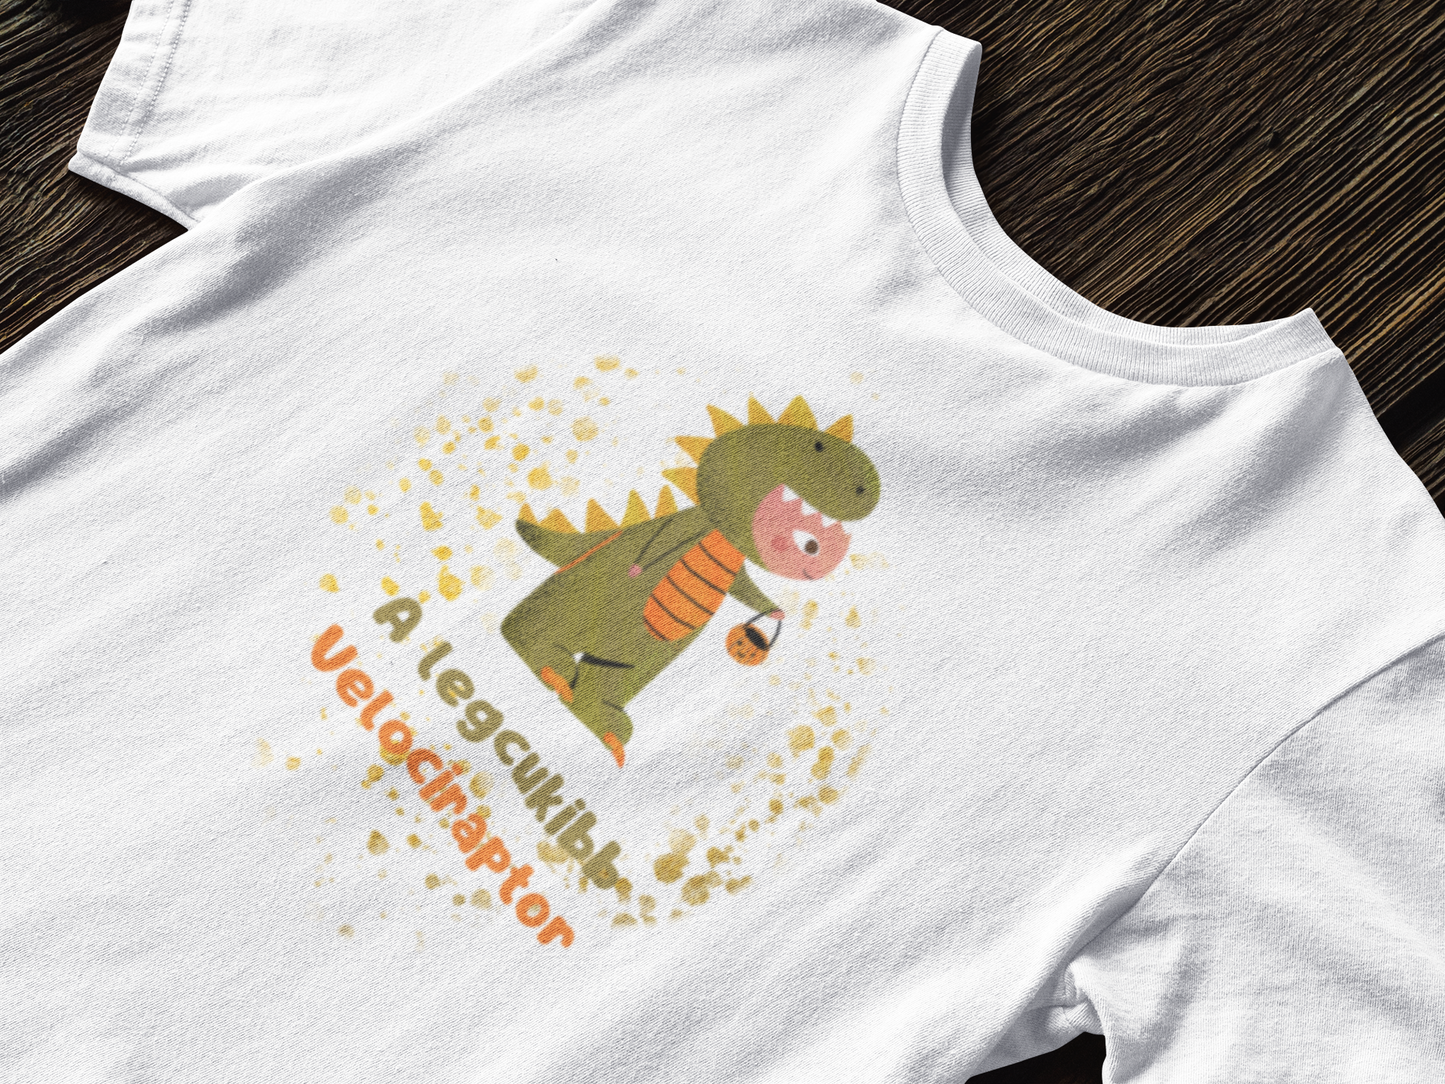 The cutest velociraptor Children's T-shirt